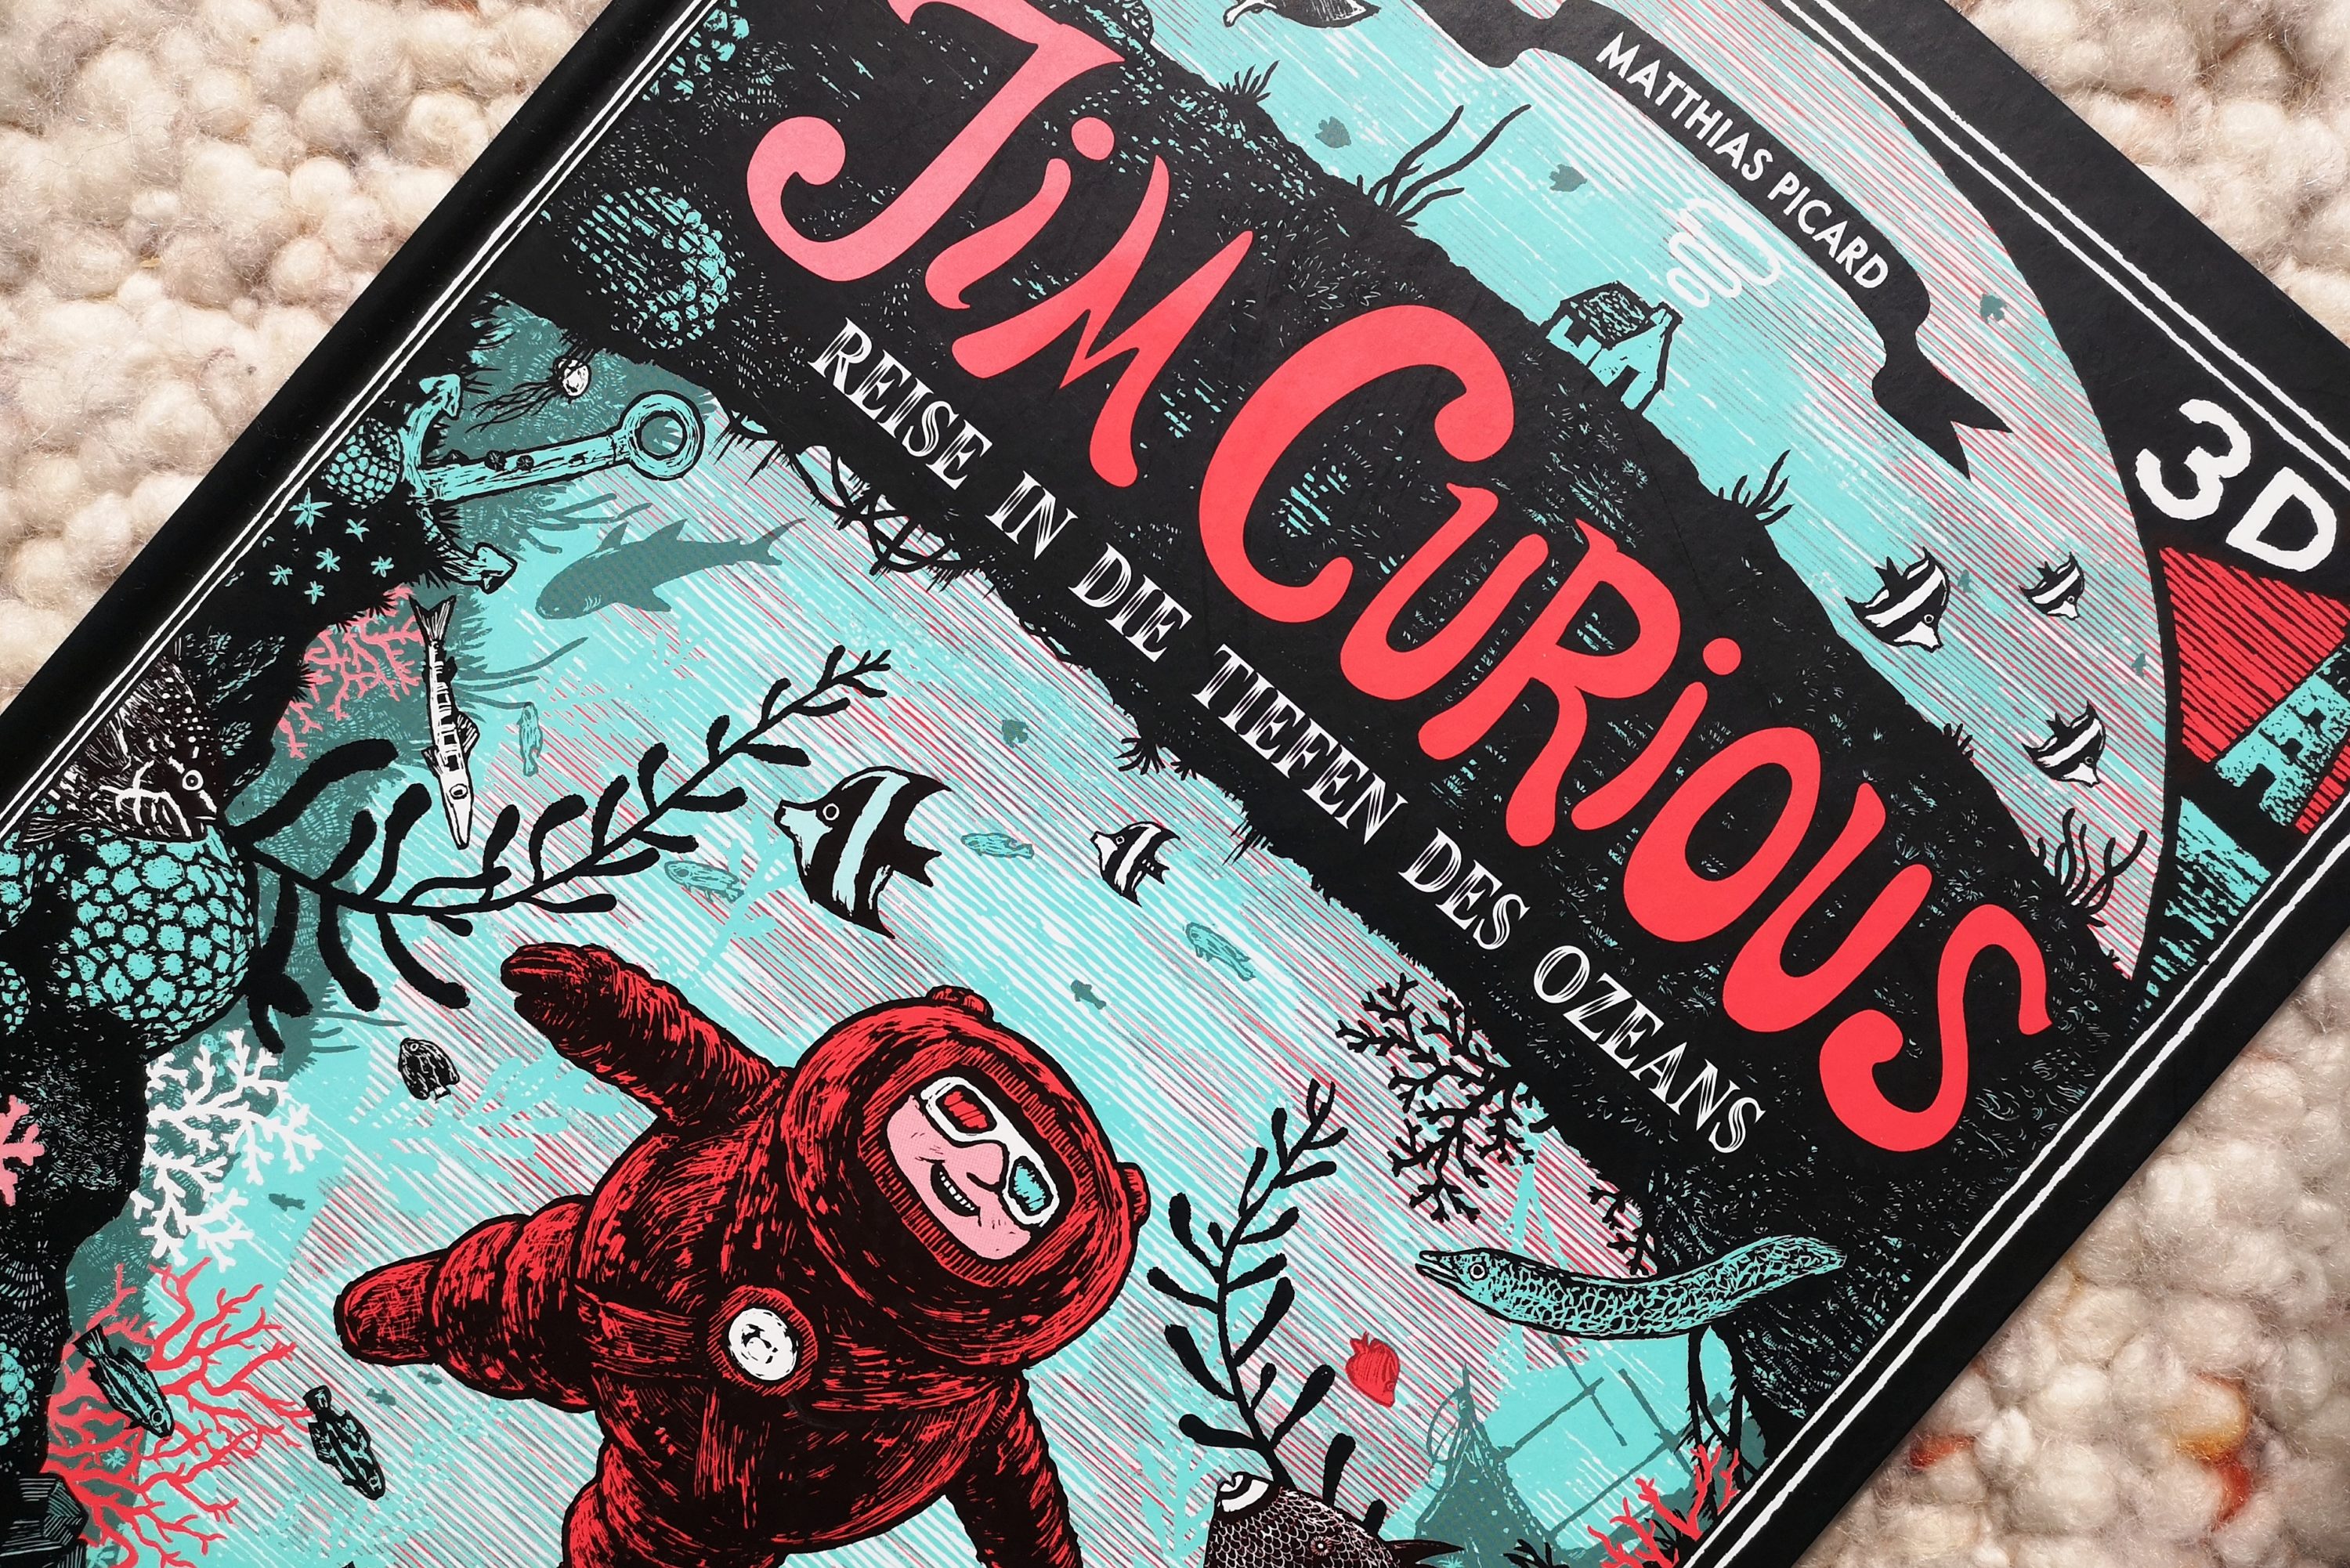 [Bücherschatztruhe] Jim Curious – Reise in die Tiefen des Ozeans